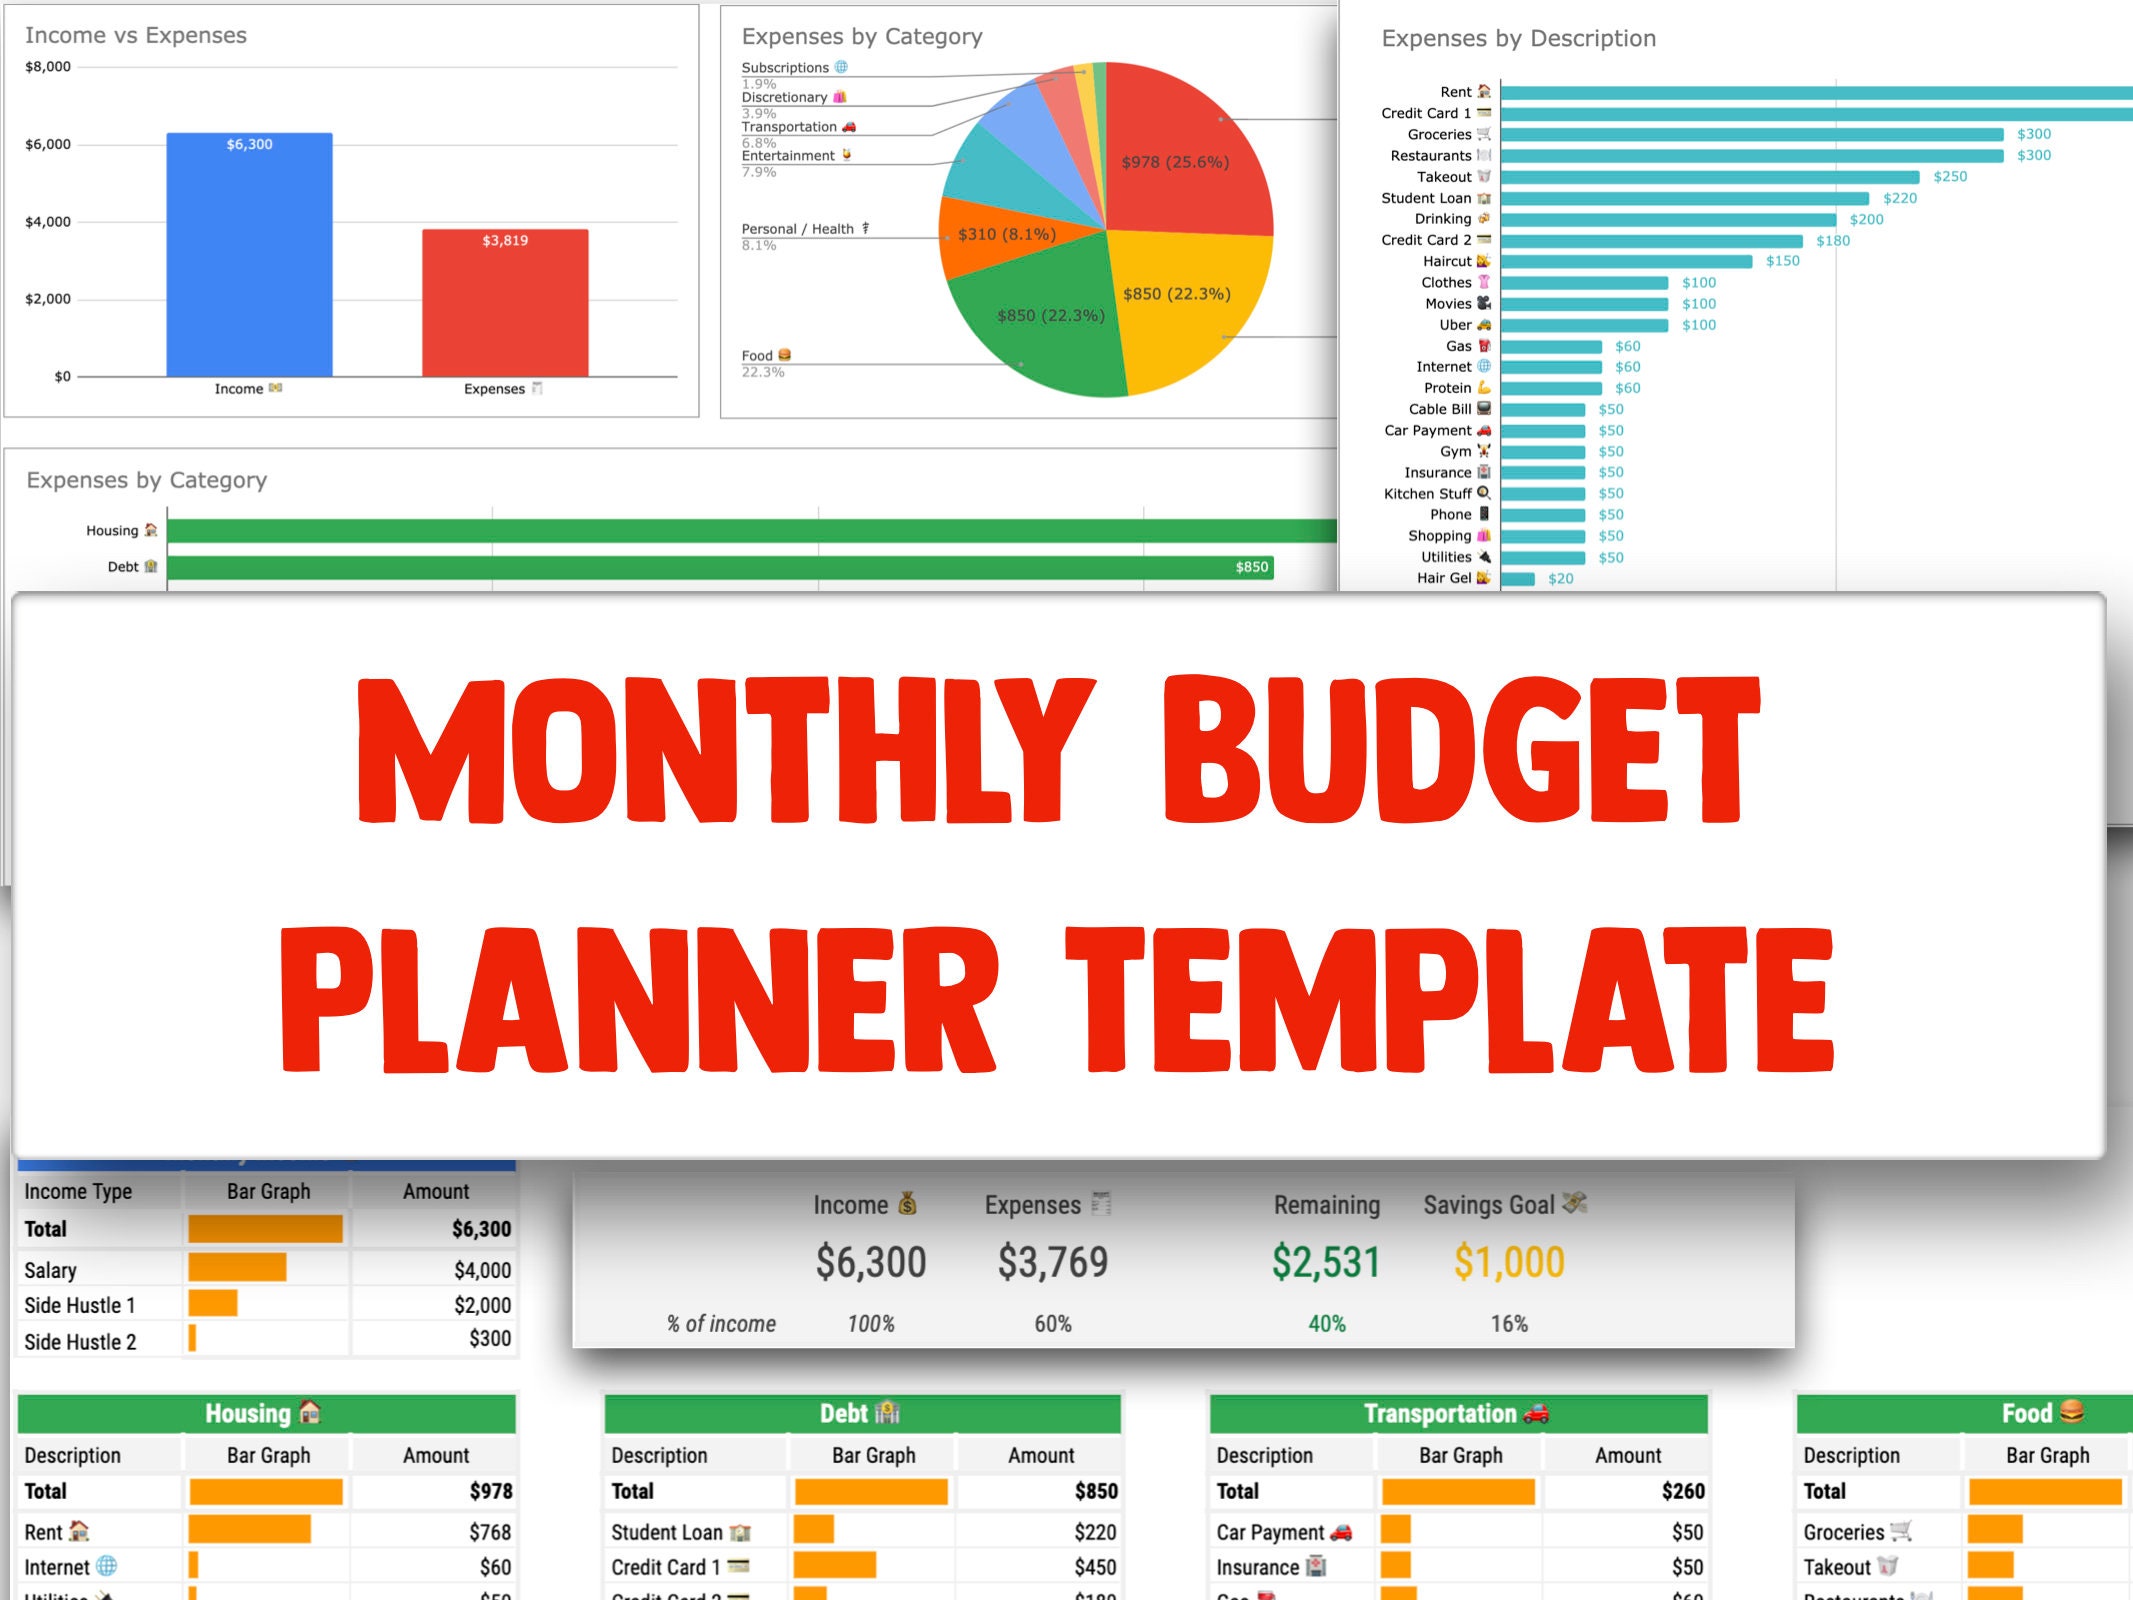 Budget mensuel : modèle gratuit sous Excel, Google Sheets